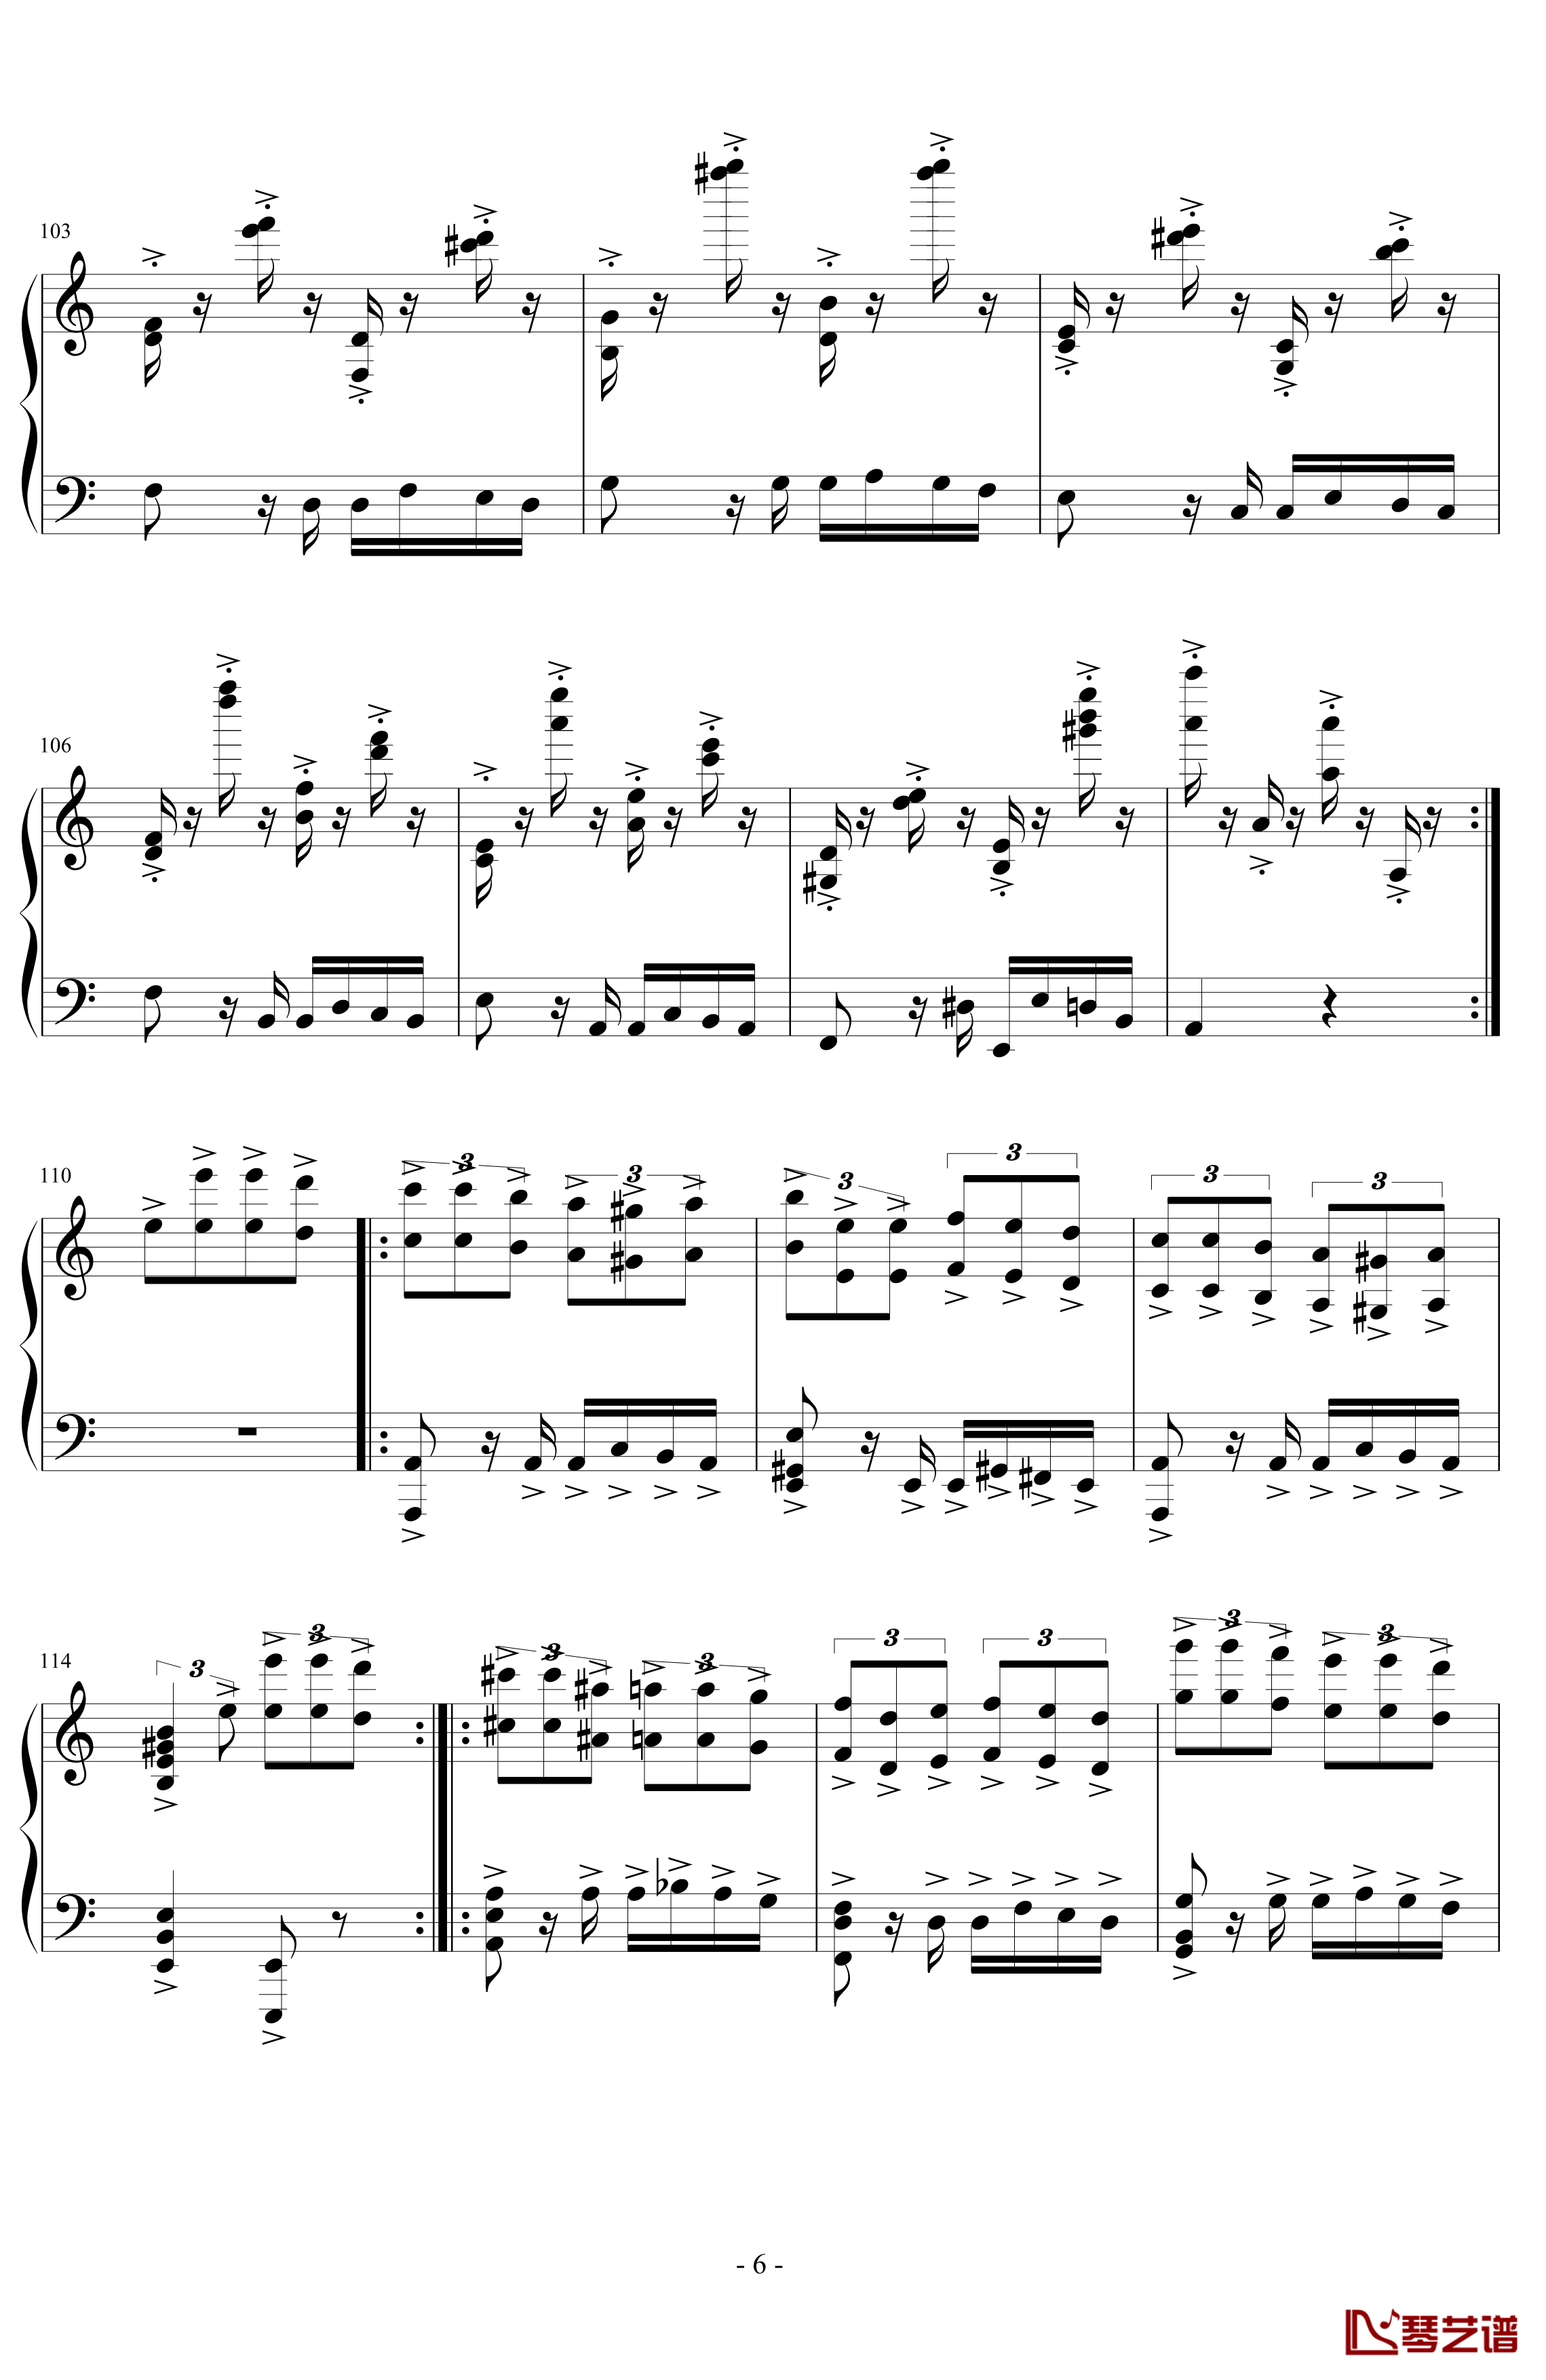 经典主题变奏曲钢琴谱-丁晓峰6